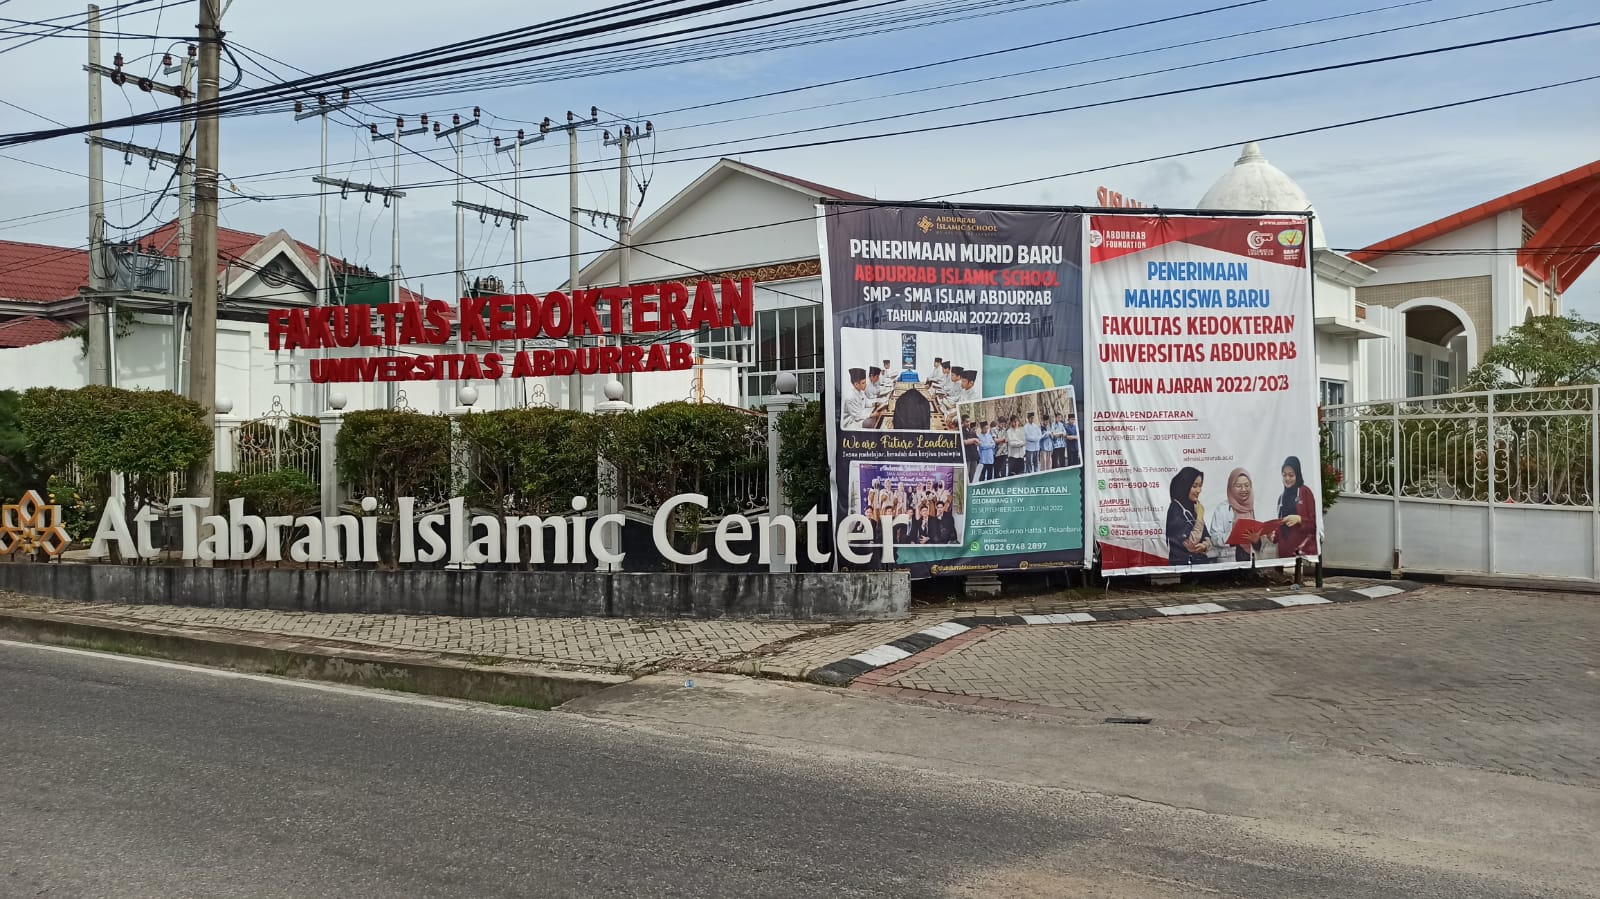 Siswa Abdurrab Islamic School Yang Terkonfirmasi Covid-19 Jalani Isolasi Mandiri